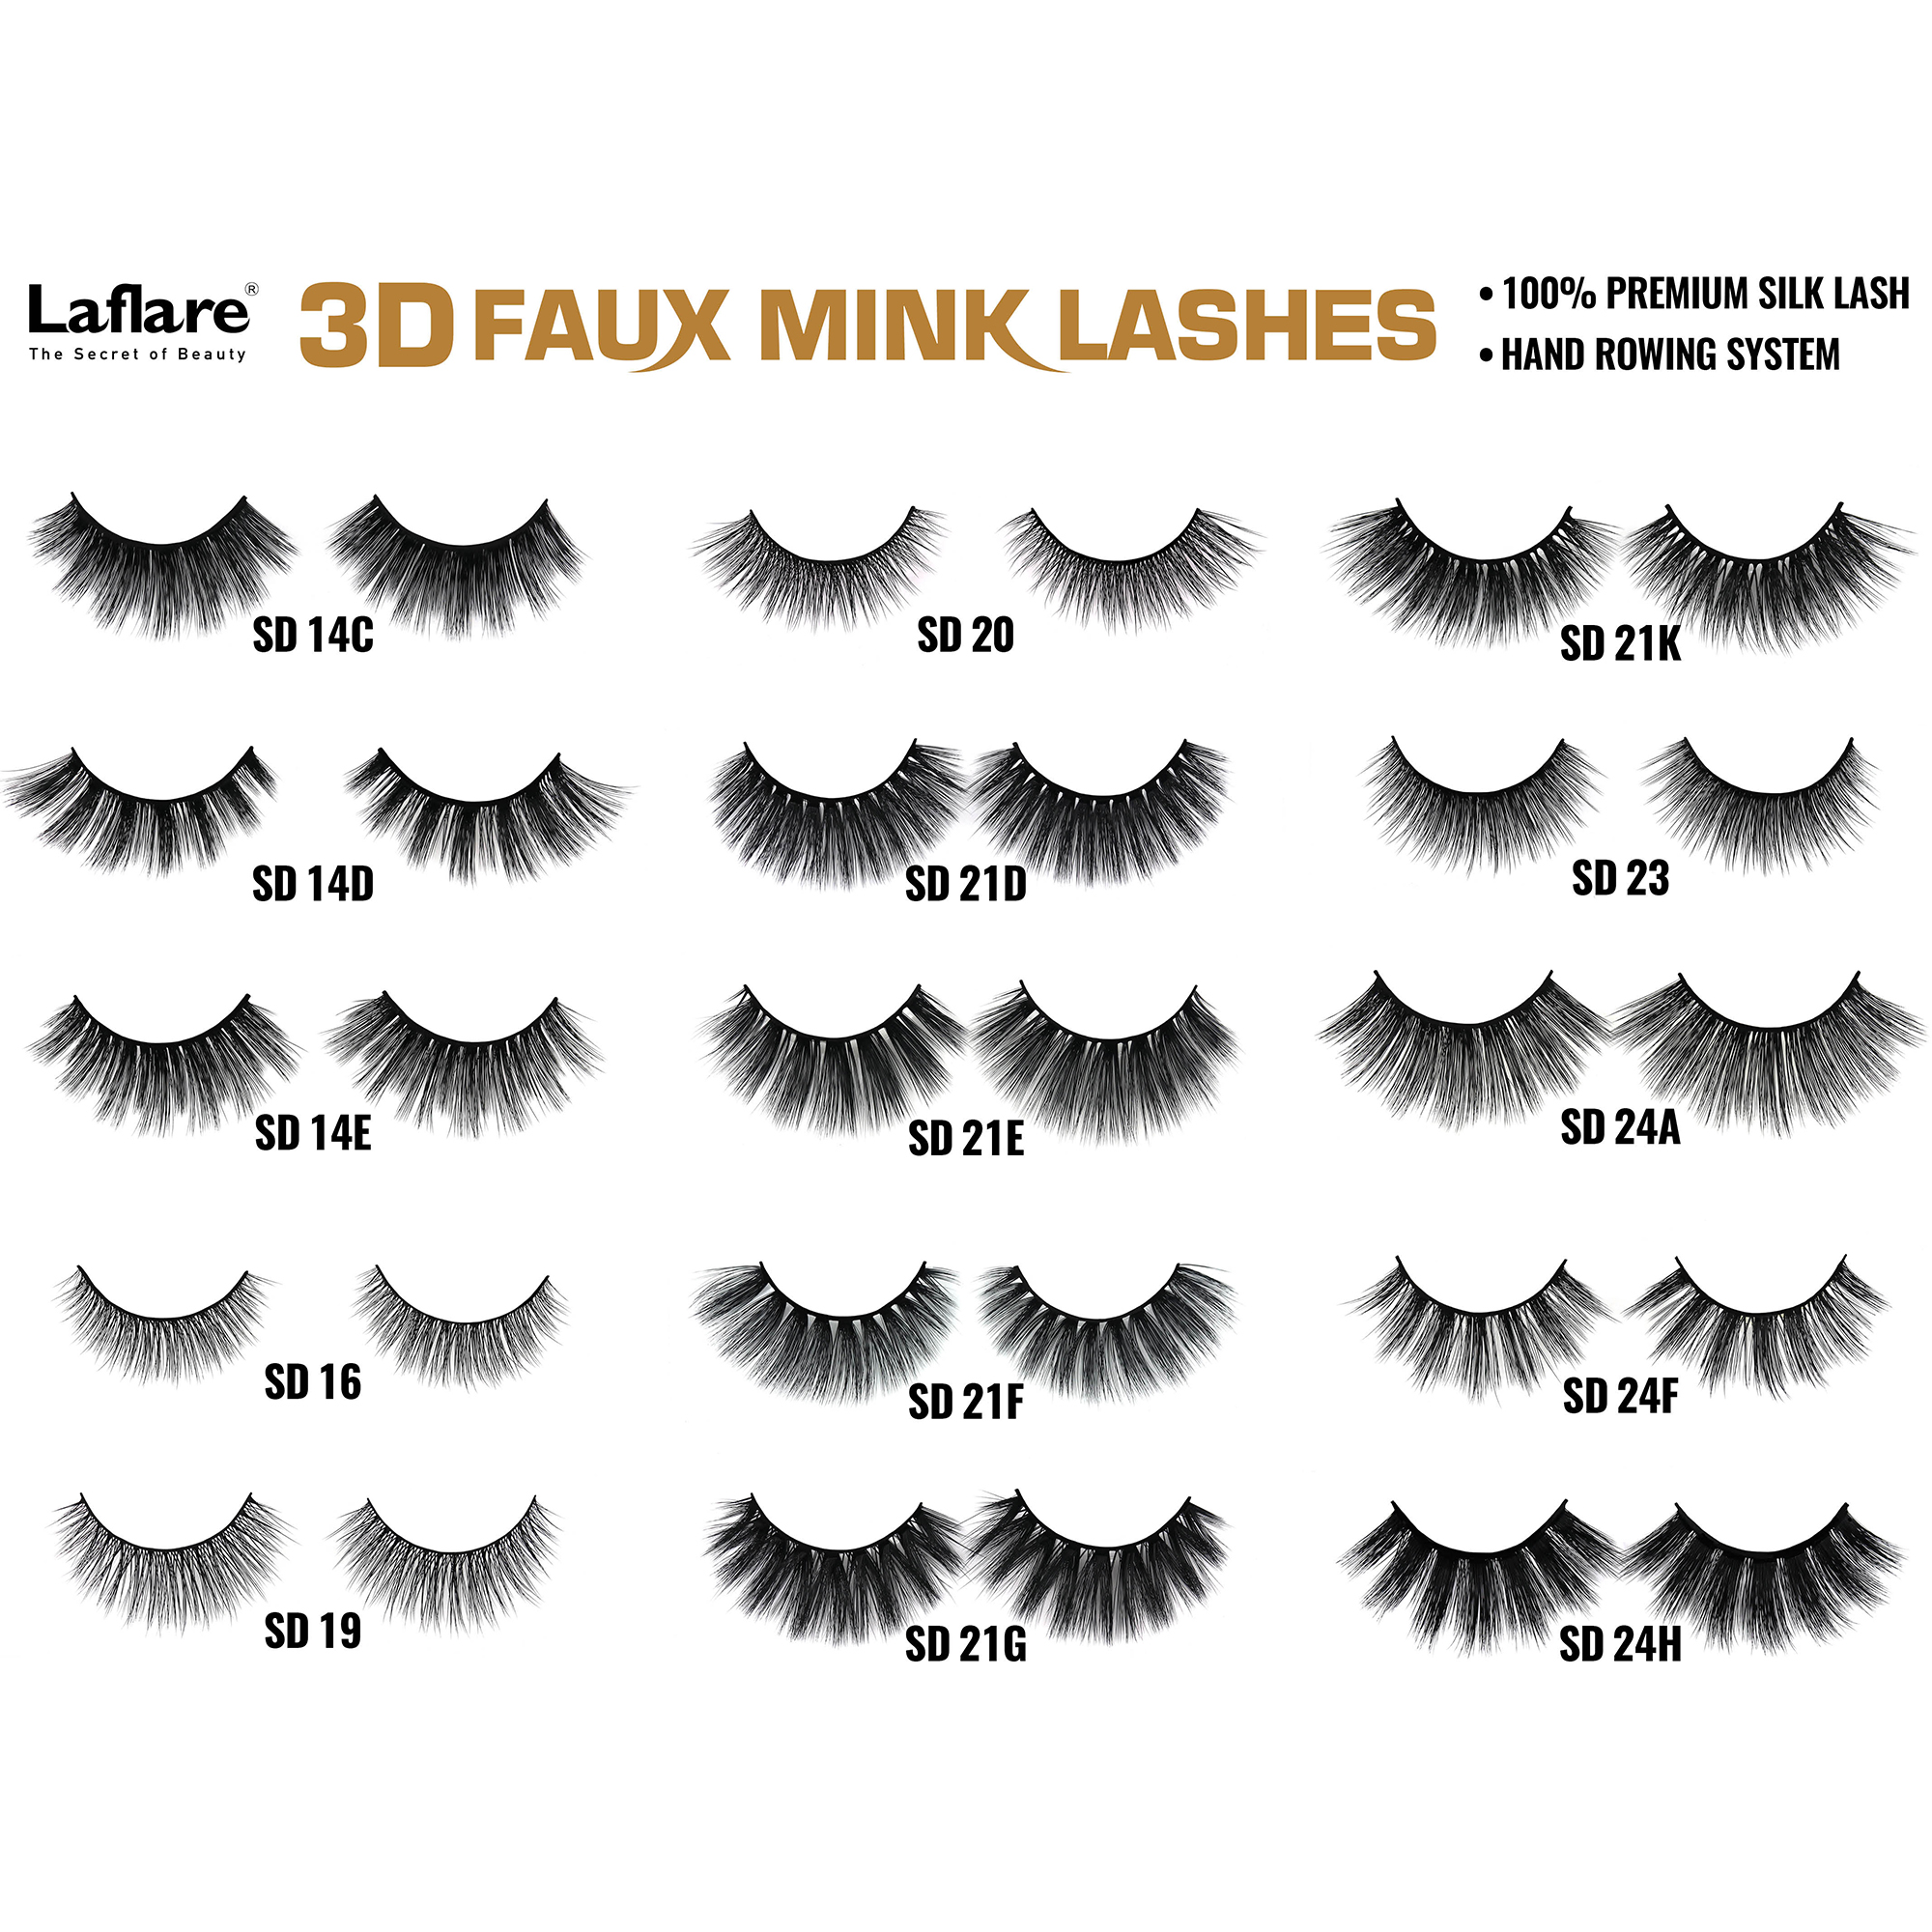 LAFLARE 3d Faux Mink Lashes - SD14B